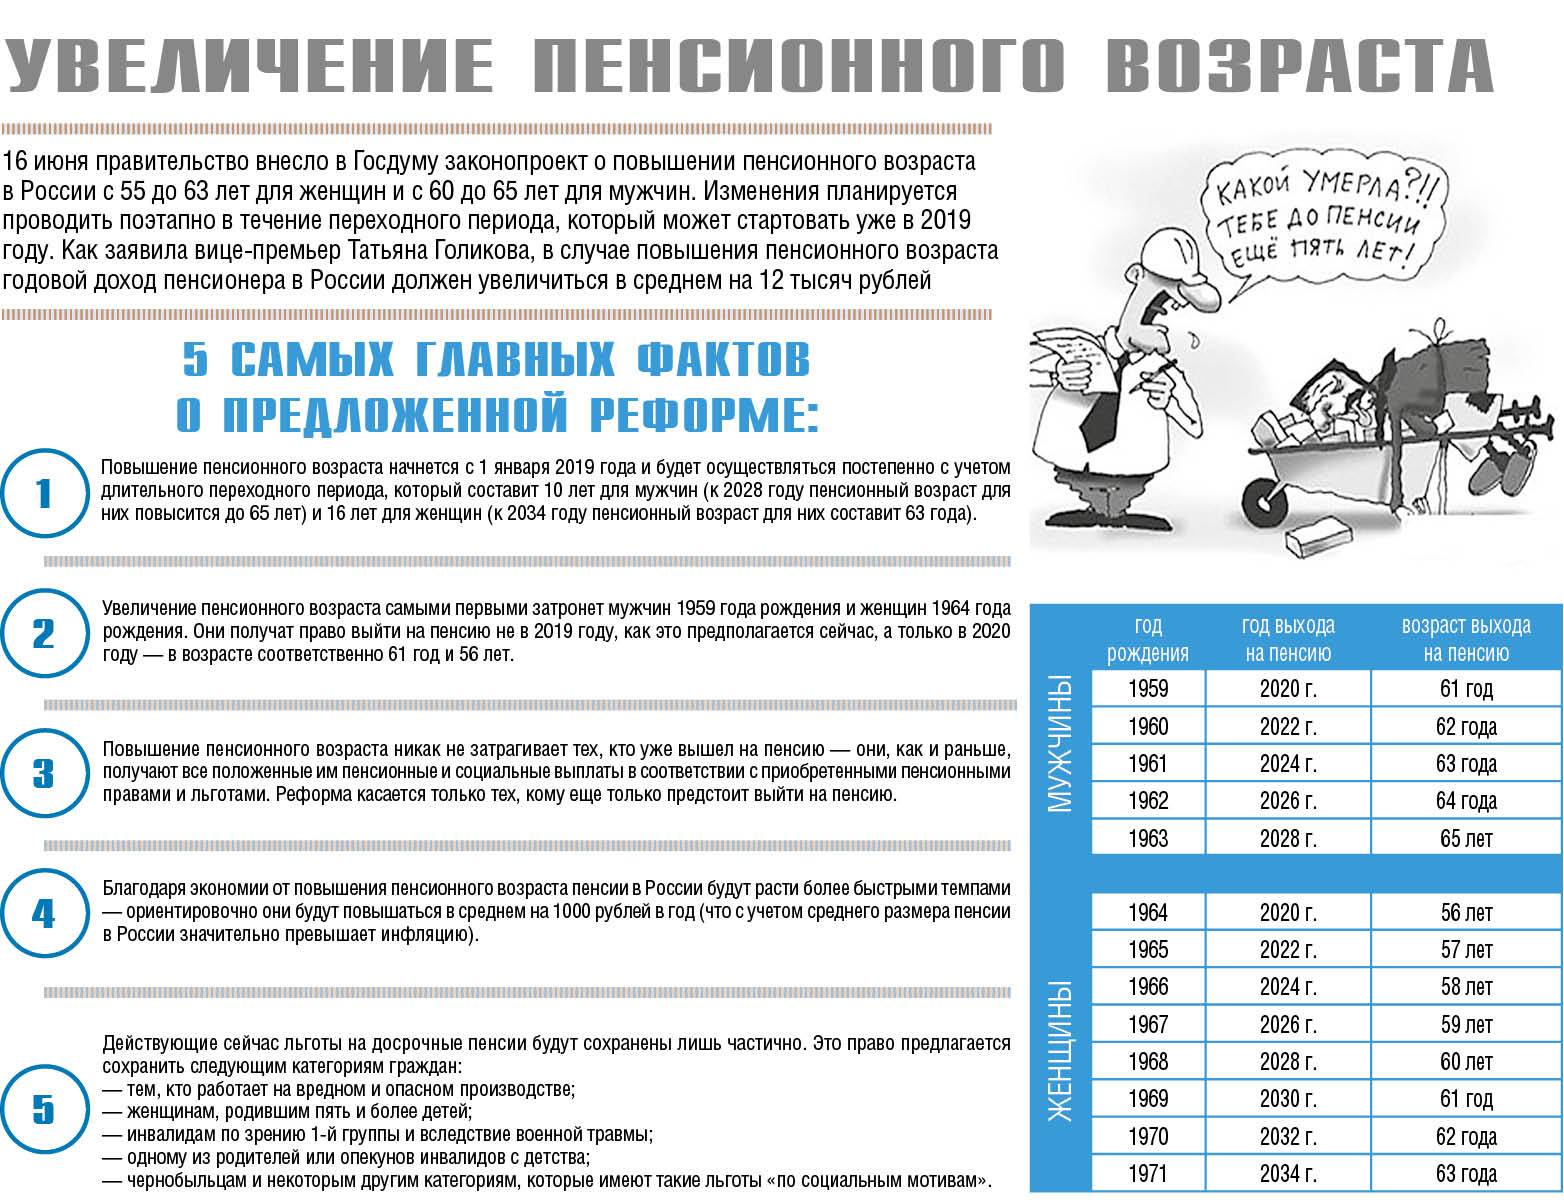 Снижение пенсионного возраста в россии до 55/60 лет – самые свежие новости об отмене пенсионной реформы в 2022 г. на сегодня